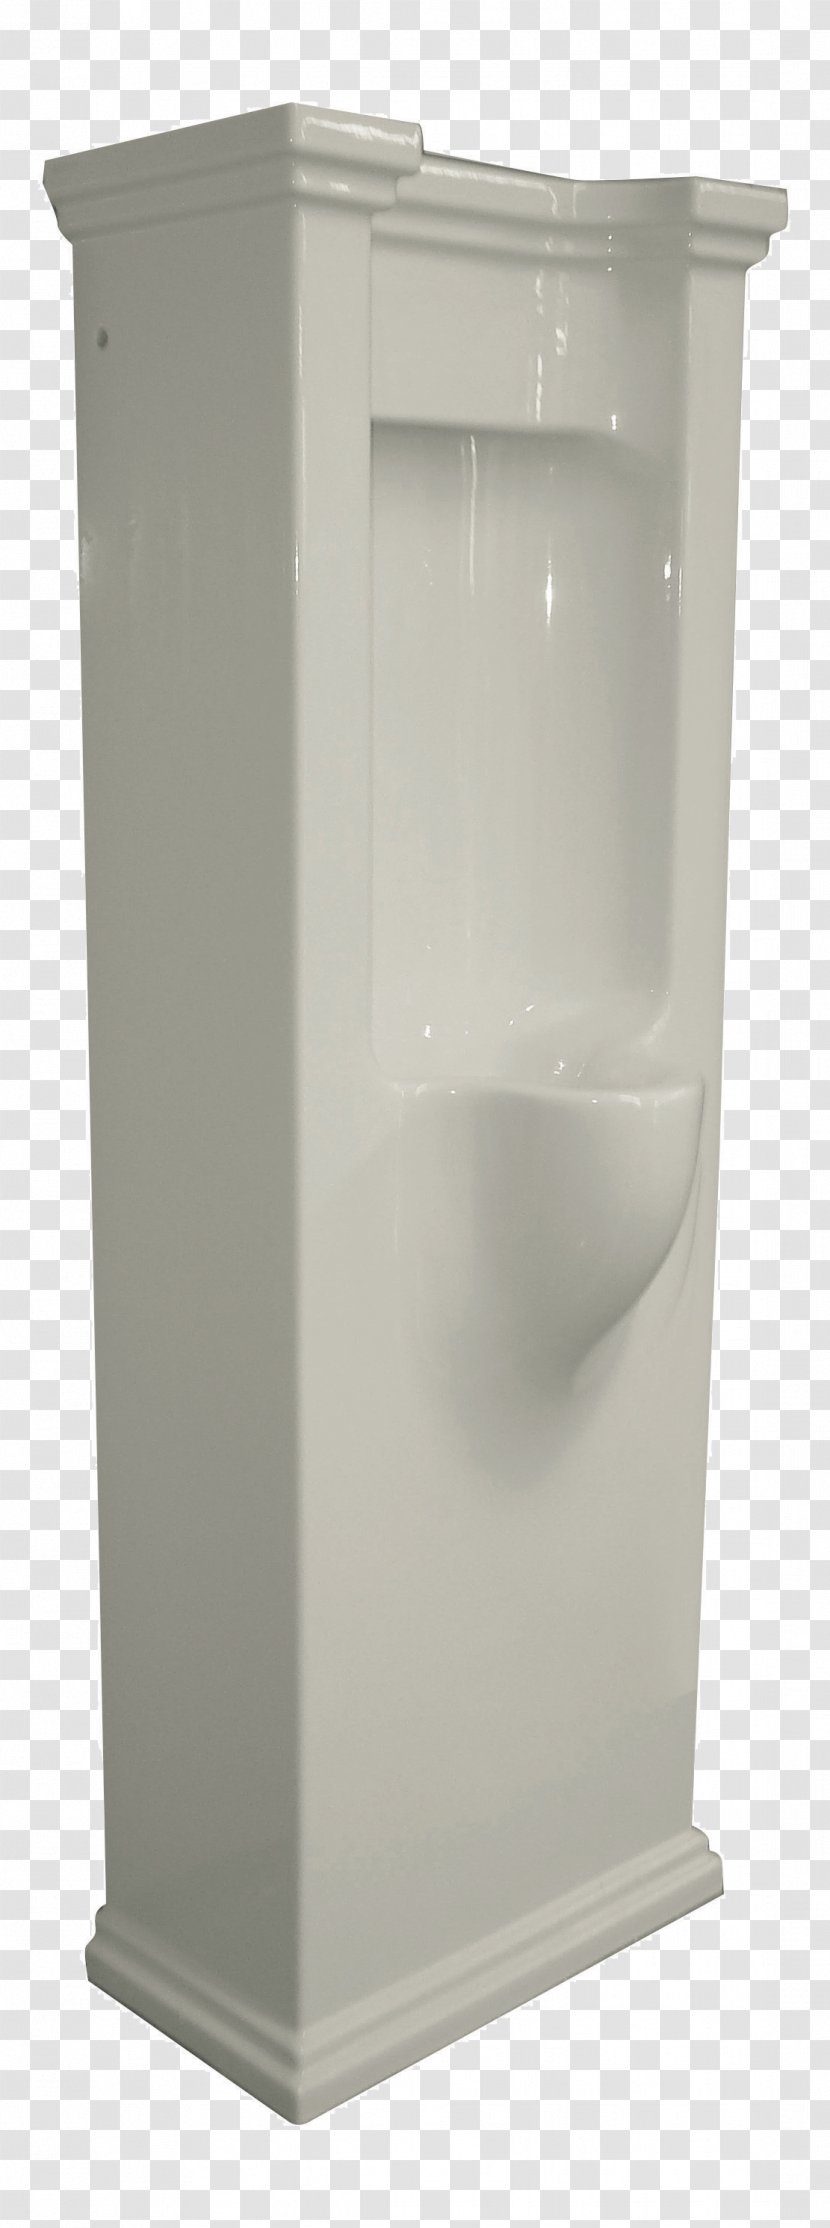 Furniture Angle - Urinal Transparent PNG